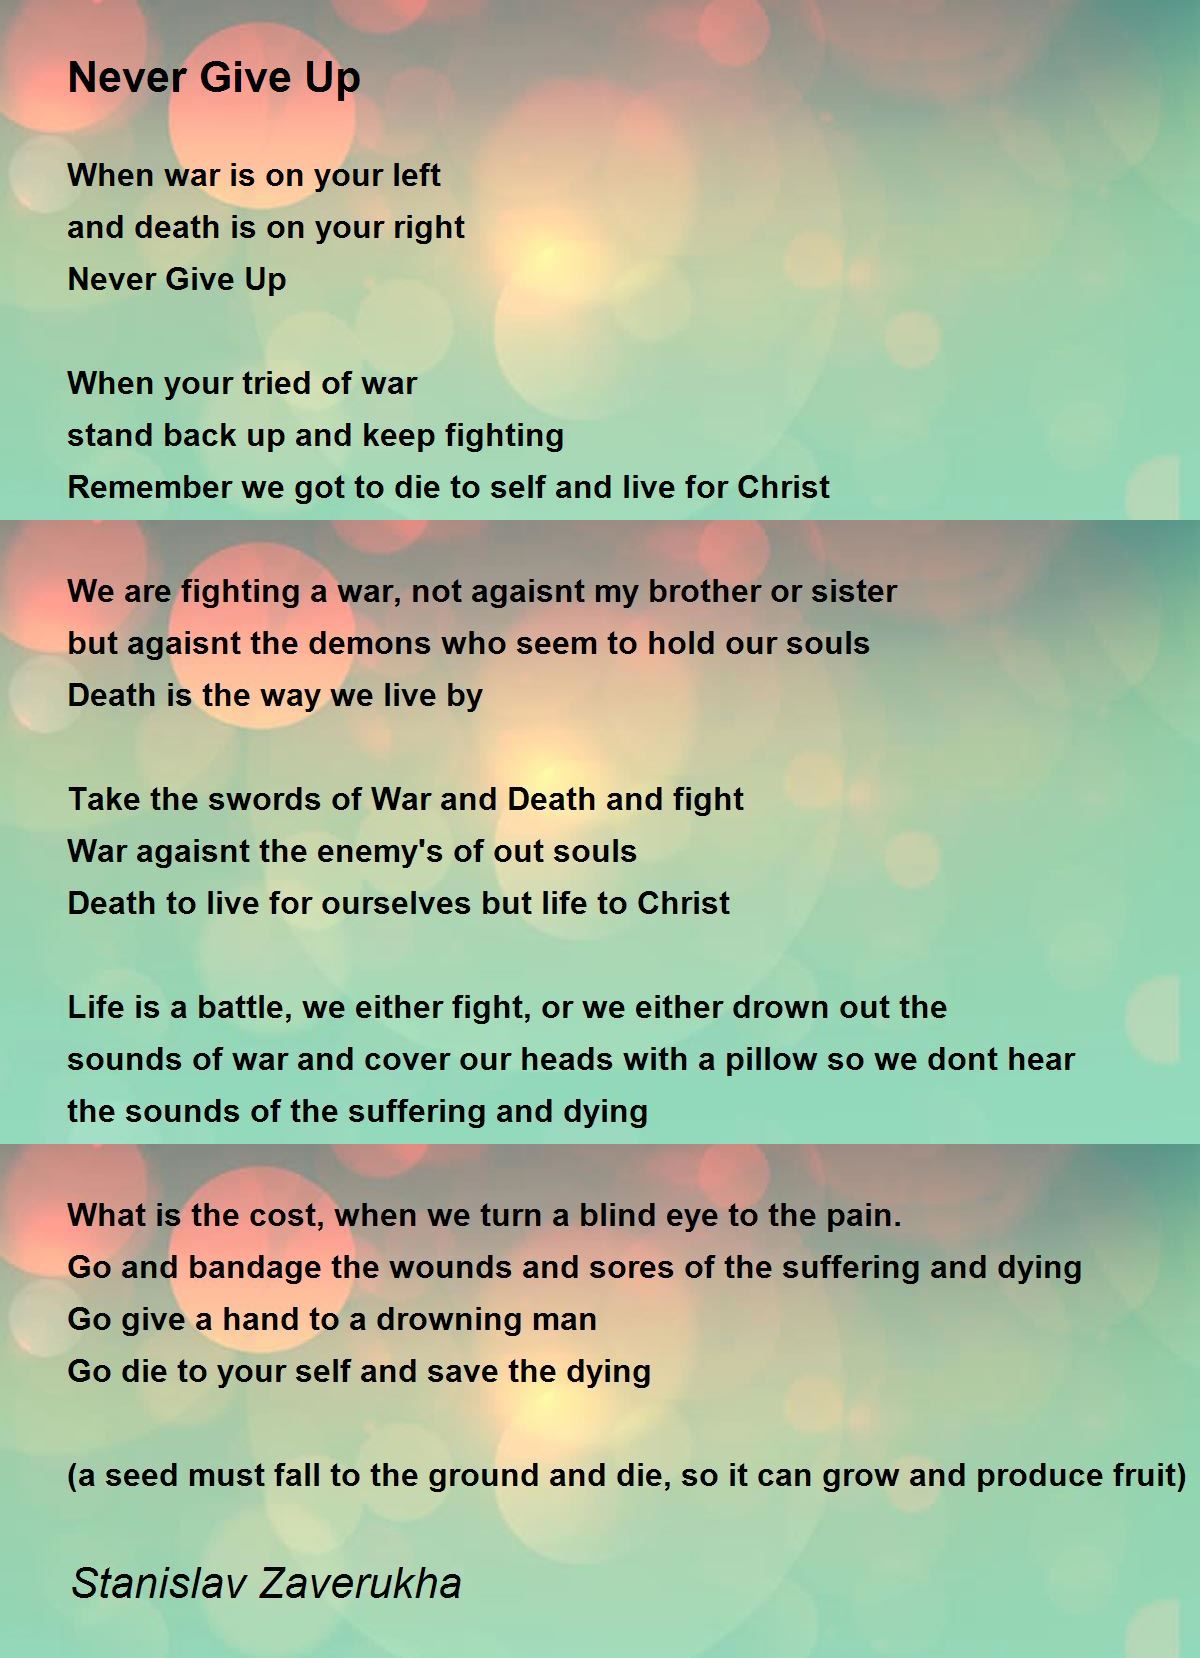 Never Give Up - Never Give Up Poem by Stanislav Zaverukha